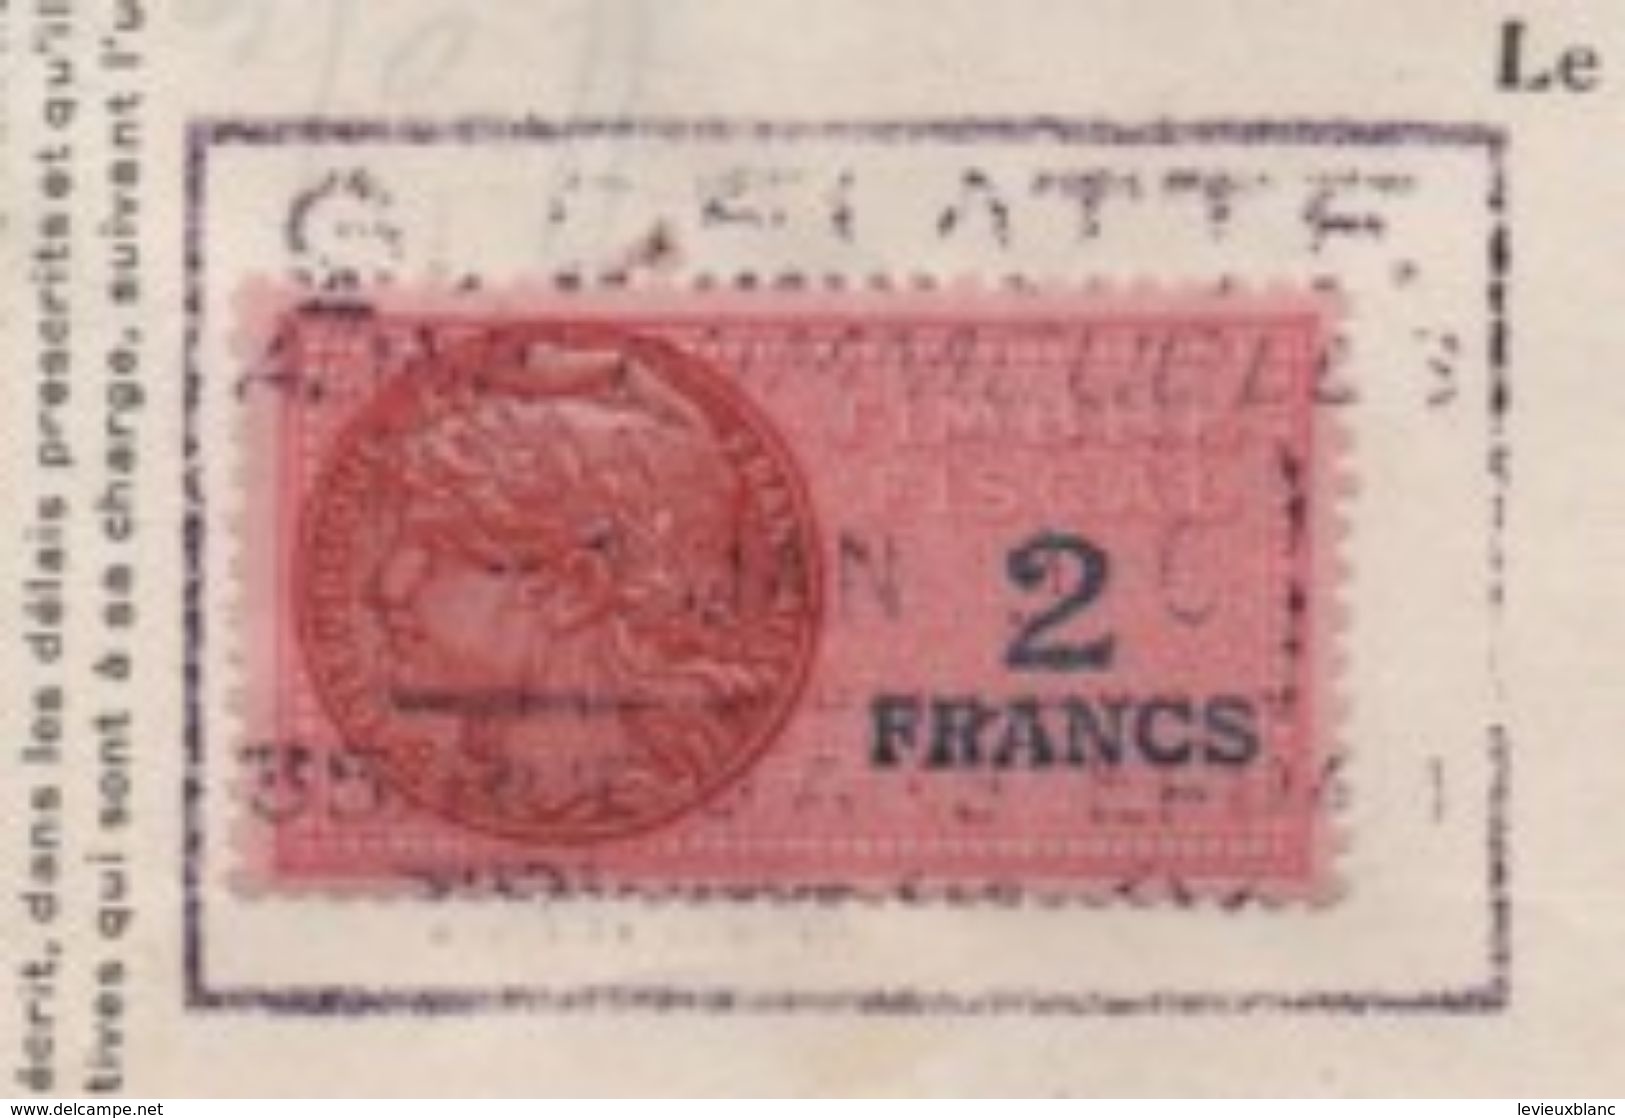 Quittance De Loyer /Reçu/Timbre Fiscal 2 Francs/ Boulogne-Billancourt/ 1946                       QUIT23 - Non Classés